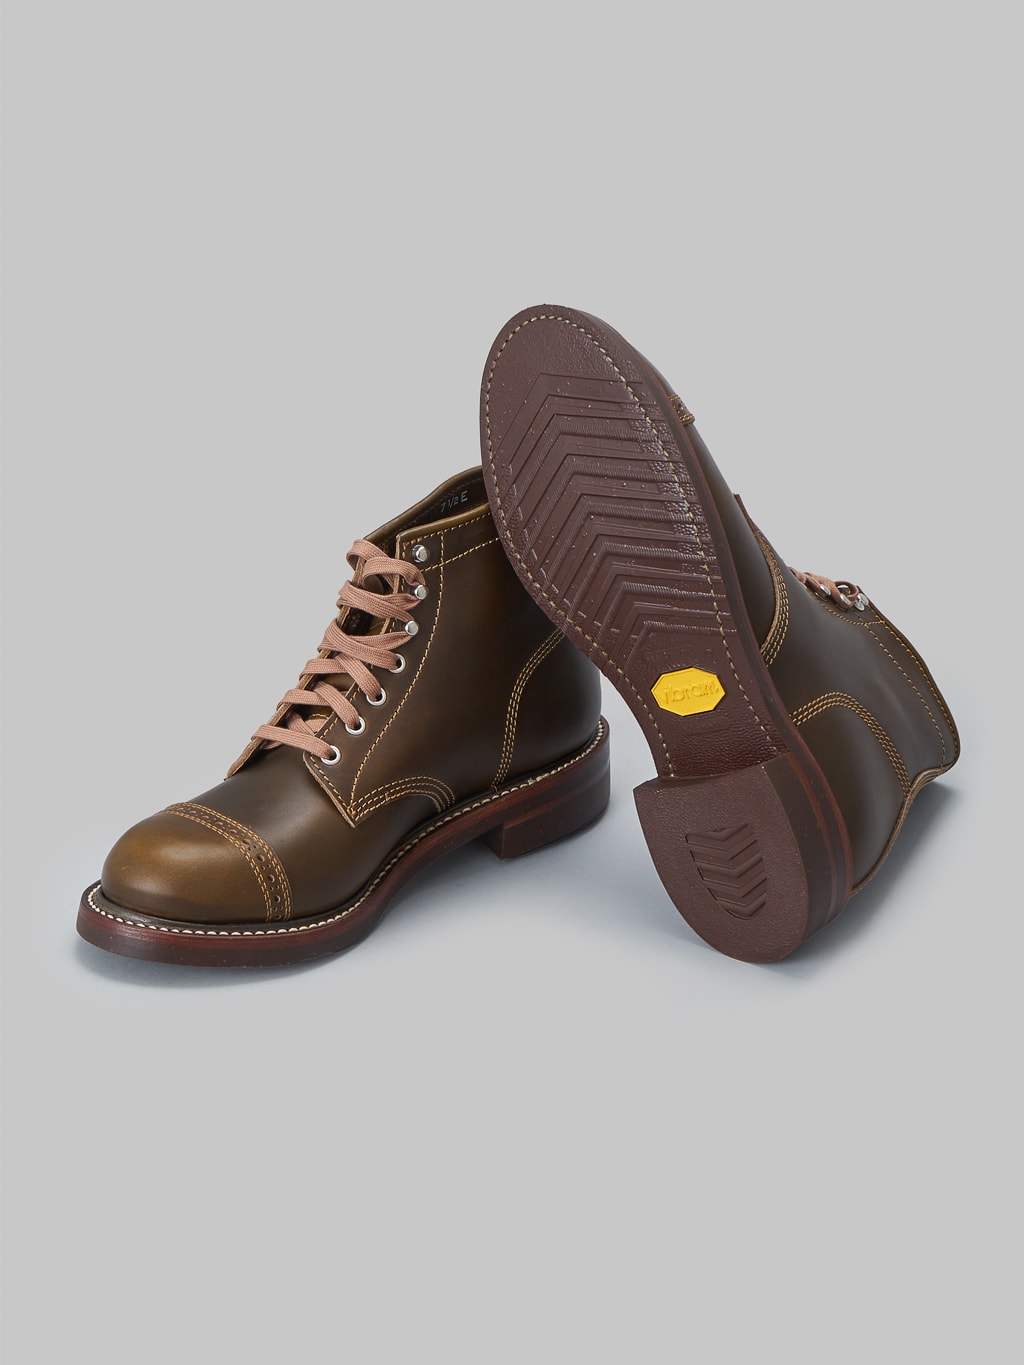 John Lofgren Combat Boots Horween Leather CXL Dark Olive cork soles